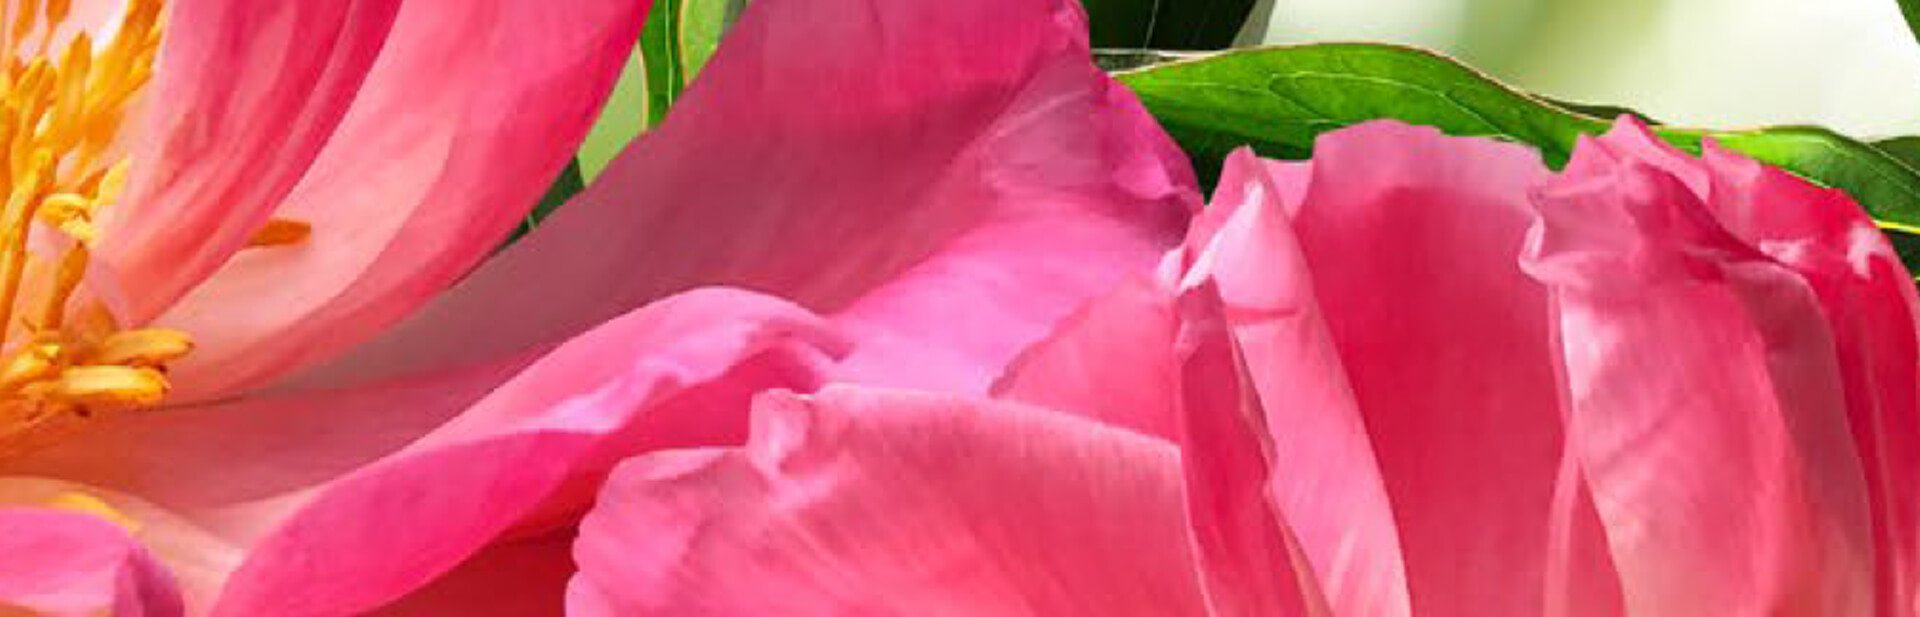 Detail einer Rose